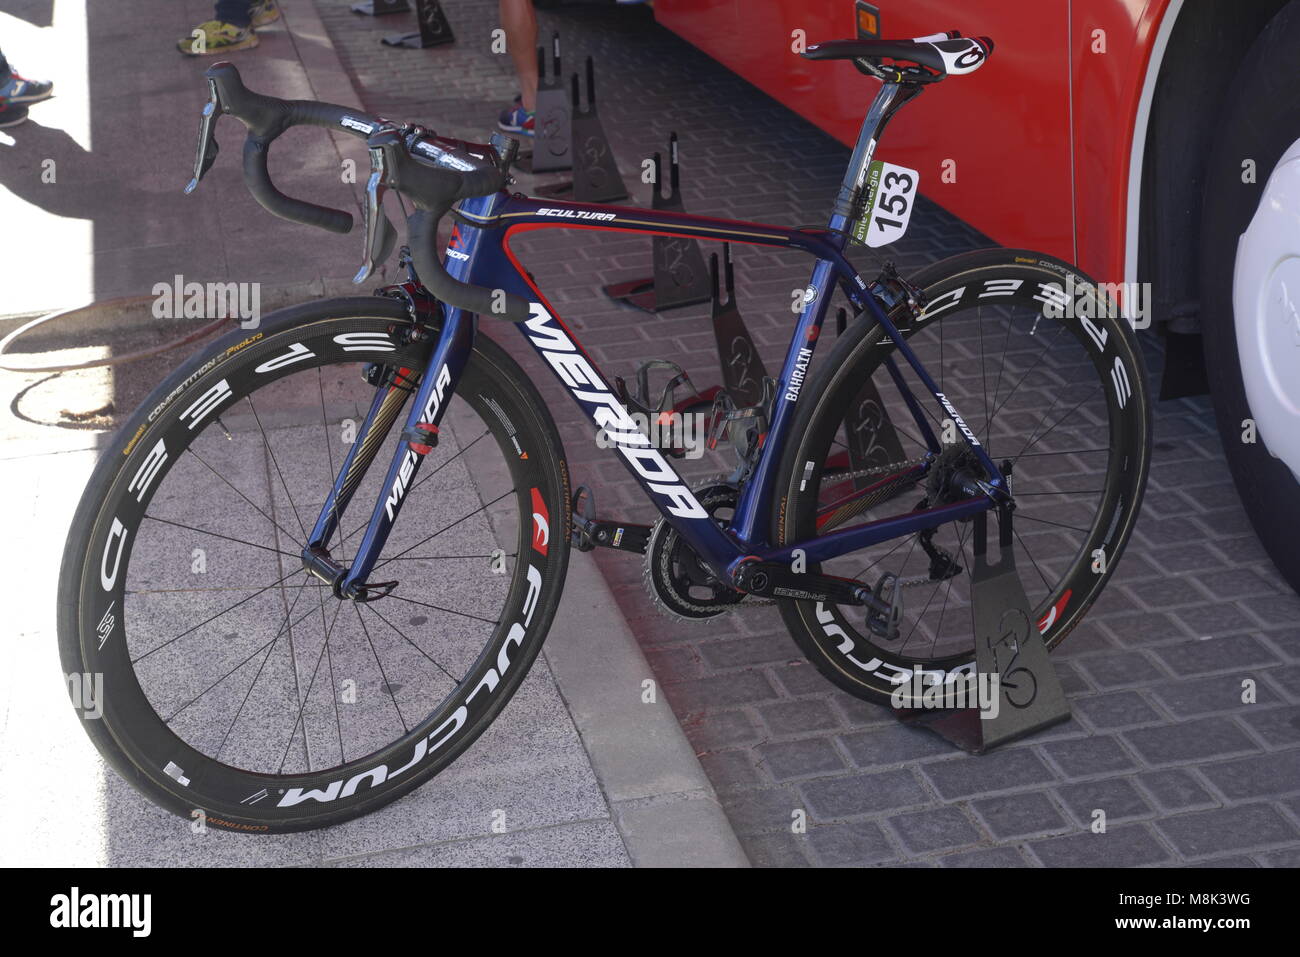 Image de Merida bike de Katusha team professionnel utilisé dans la Vuelta, Espagne. Banque D'Images